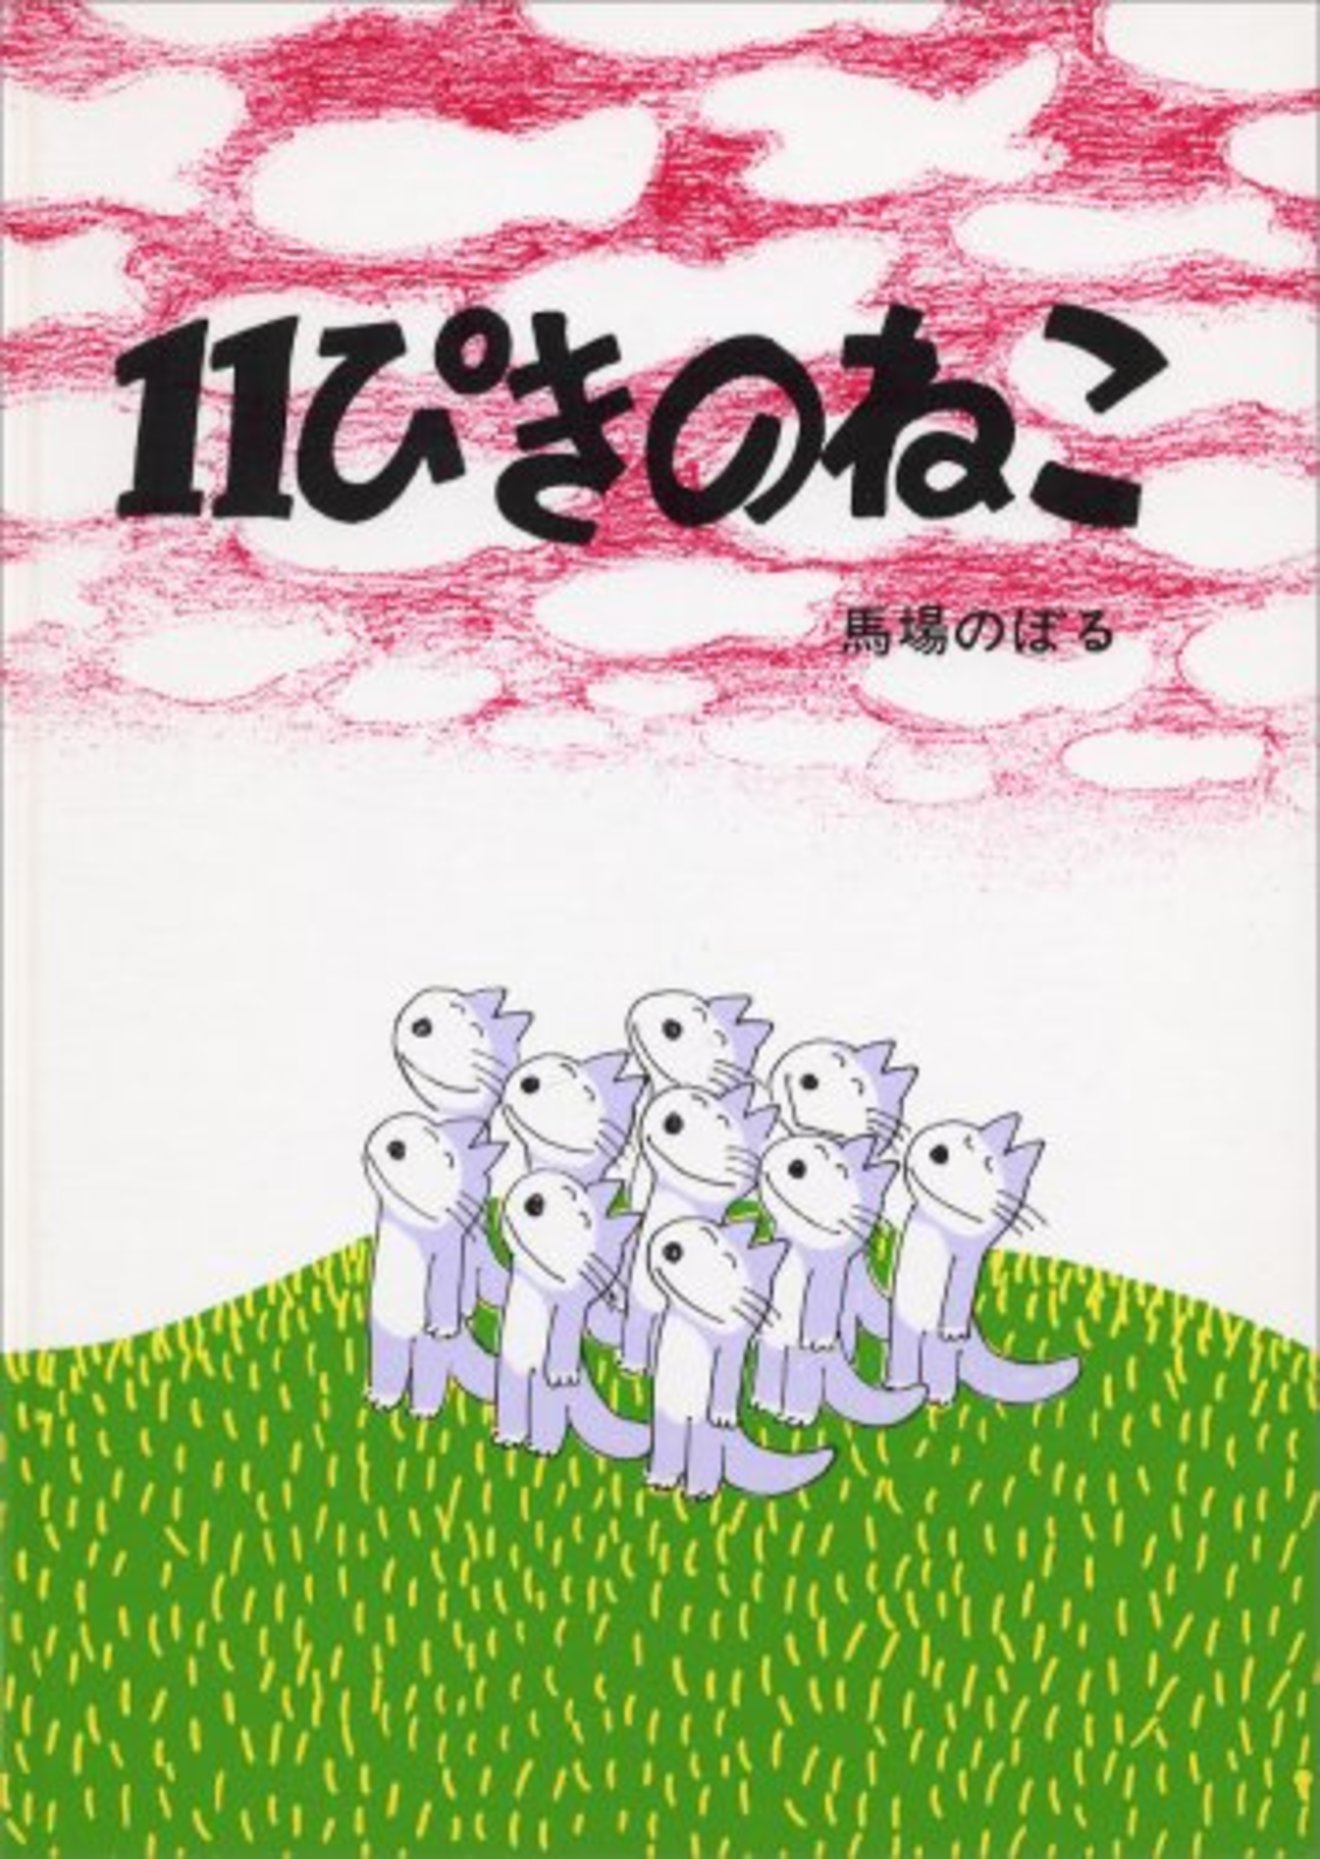 11ぴきのねこ シリーズは全部読んだ 昔から愛され続ける絵本 絵本 児童書も ホンシェルジュ